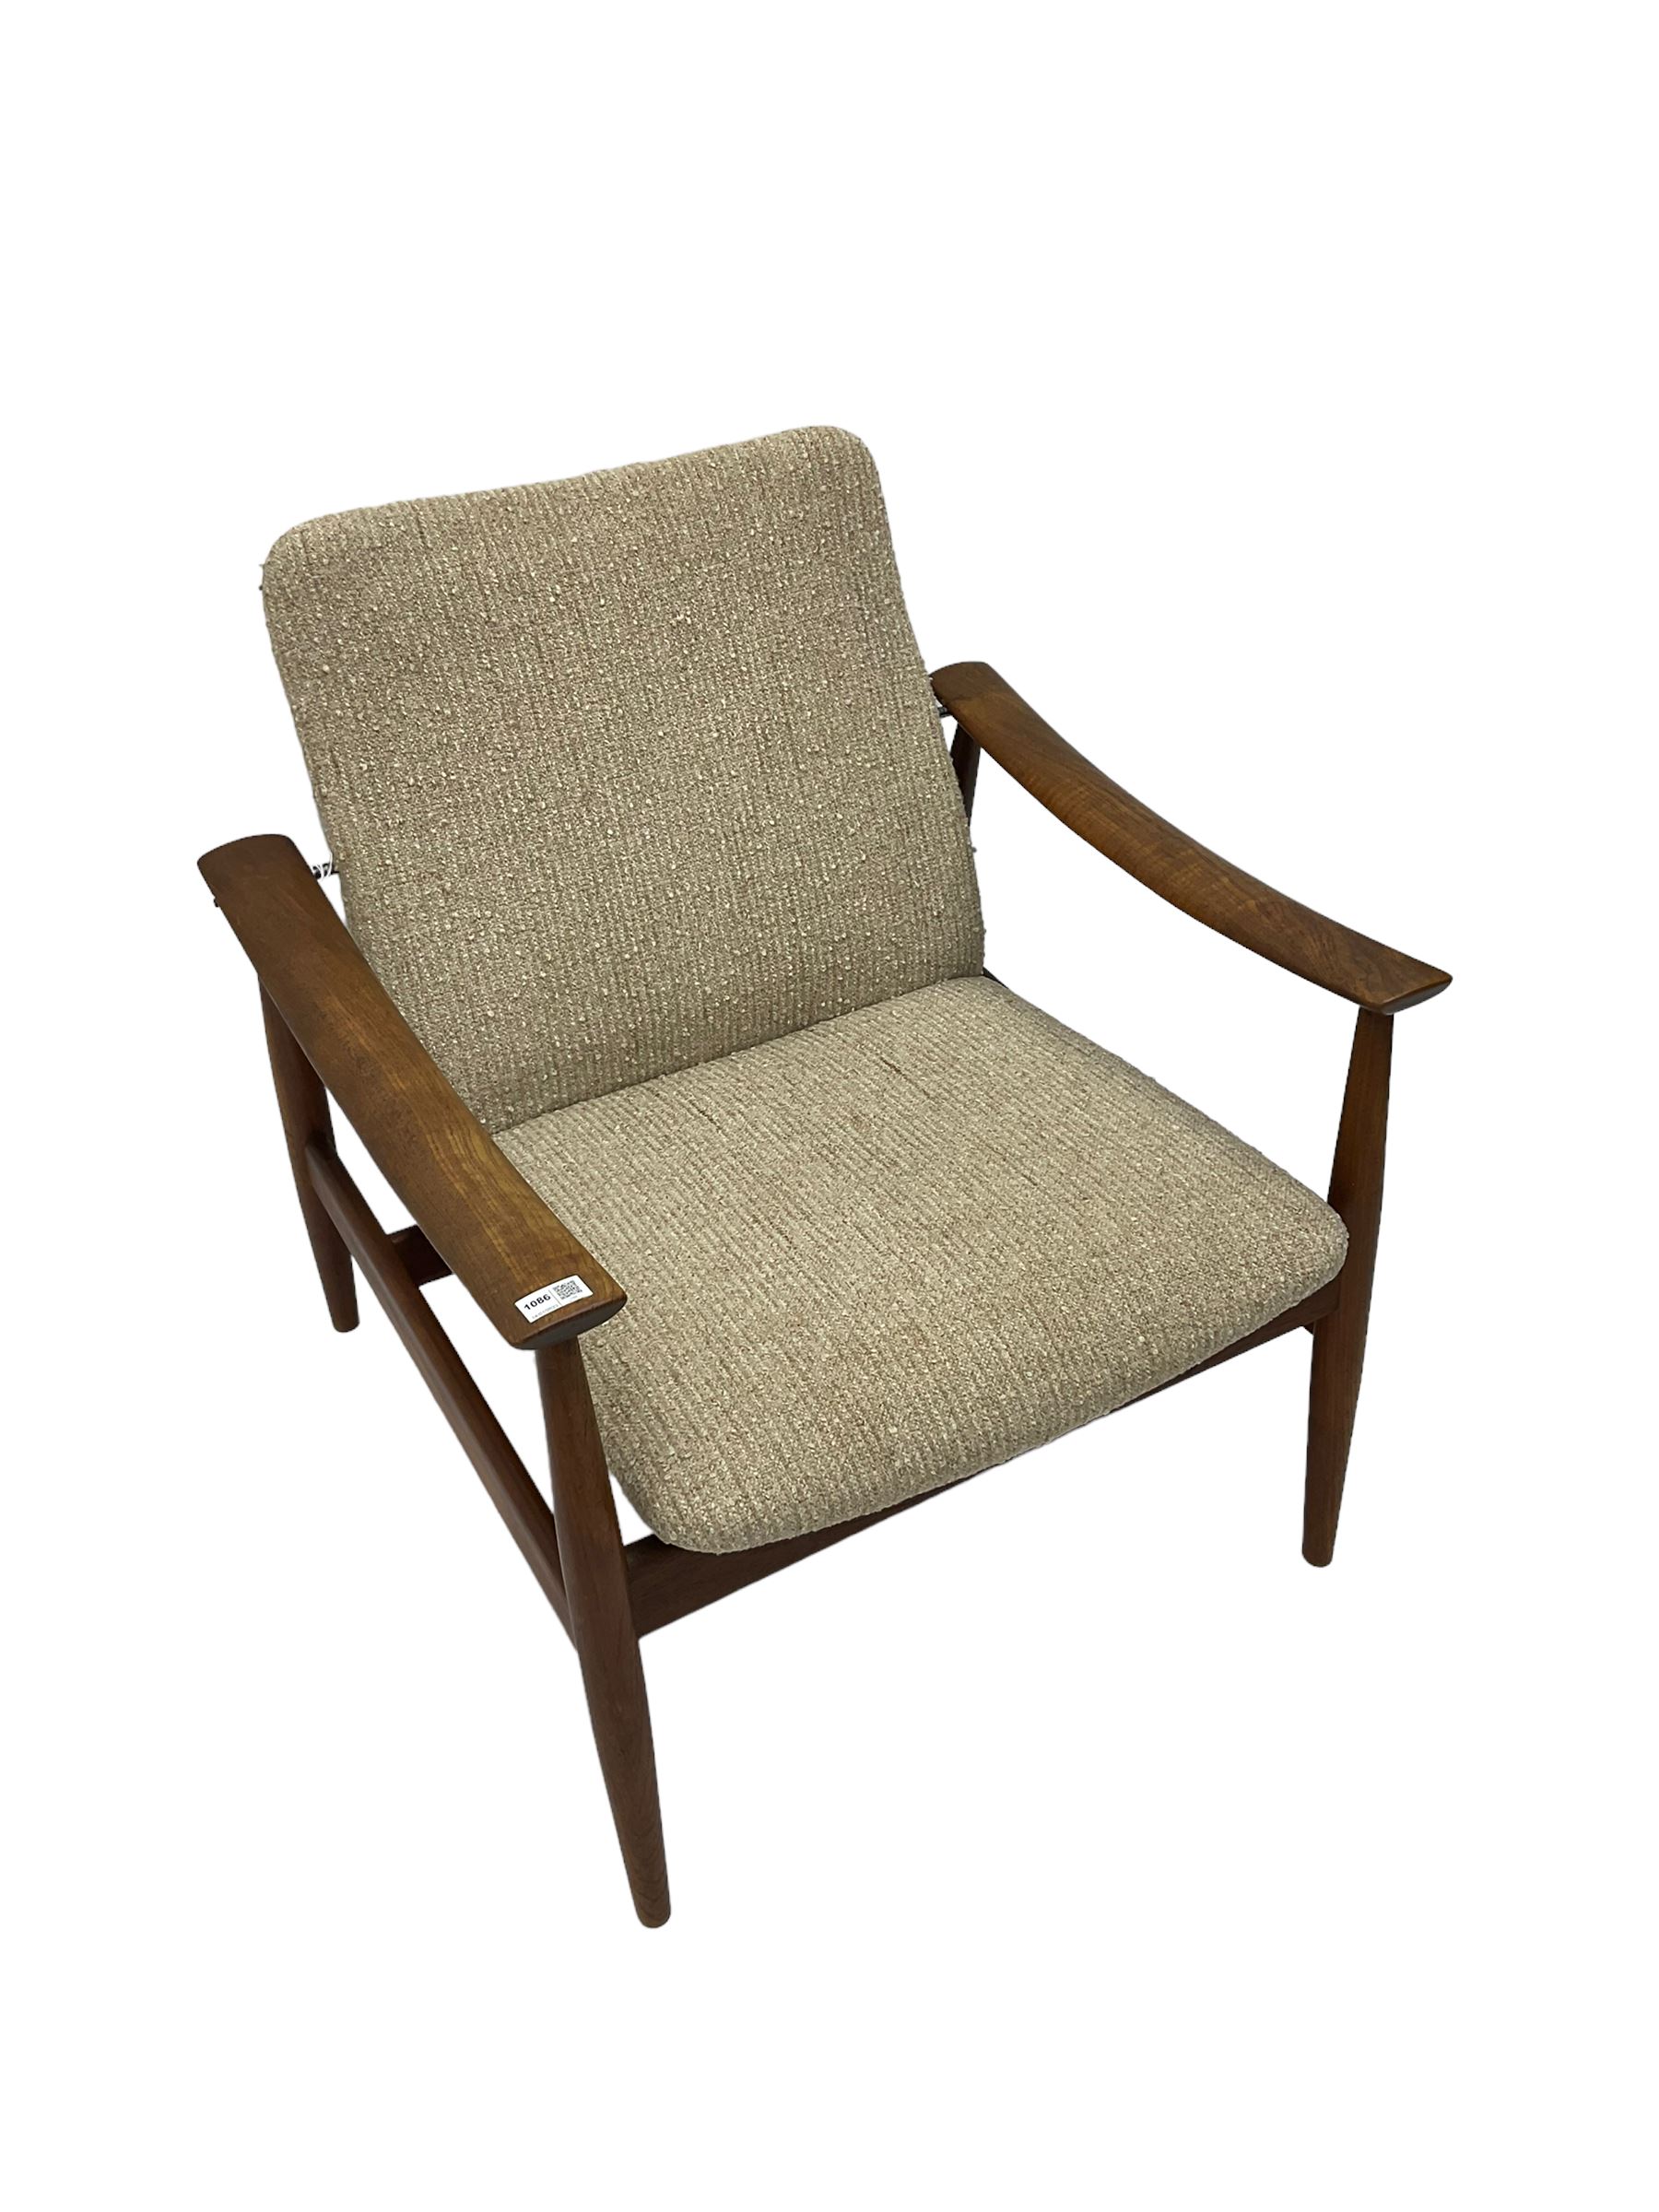 Finn Juhl for France & Son - 'model 138' mid-20th century teak easy chair upholstered in beige fabri - Image 6 of 14